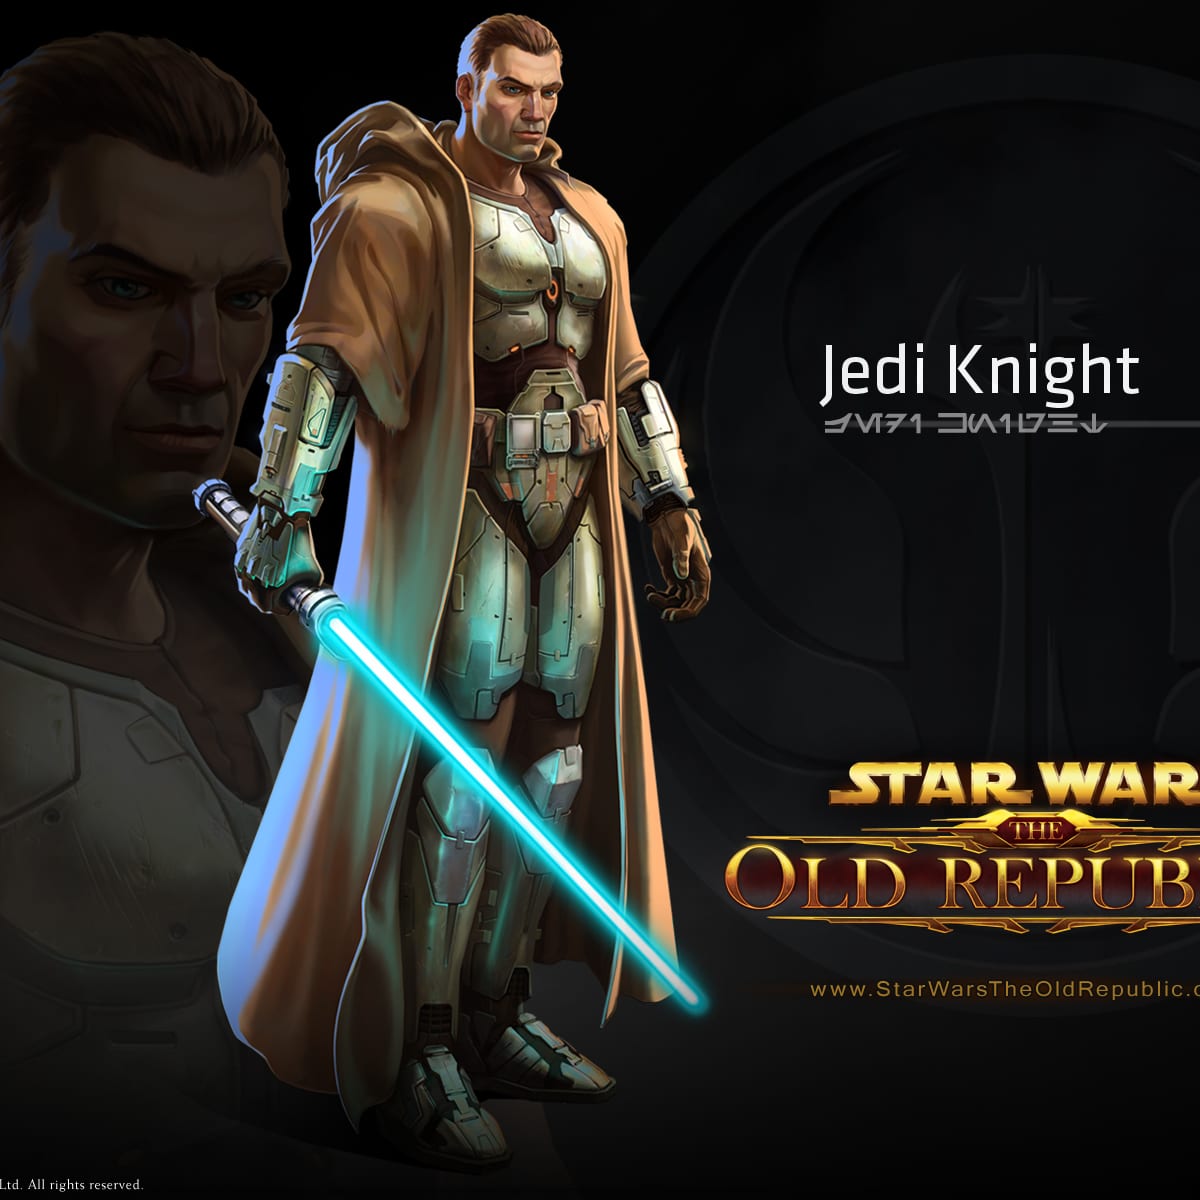 Jedi Knight SWTOR Companion Gift Guide LevelSkip. levelskip.com. 